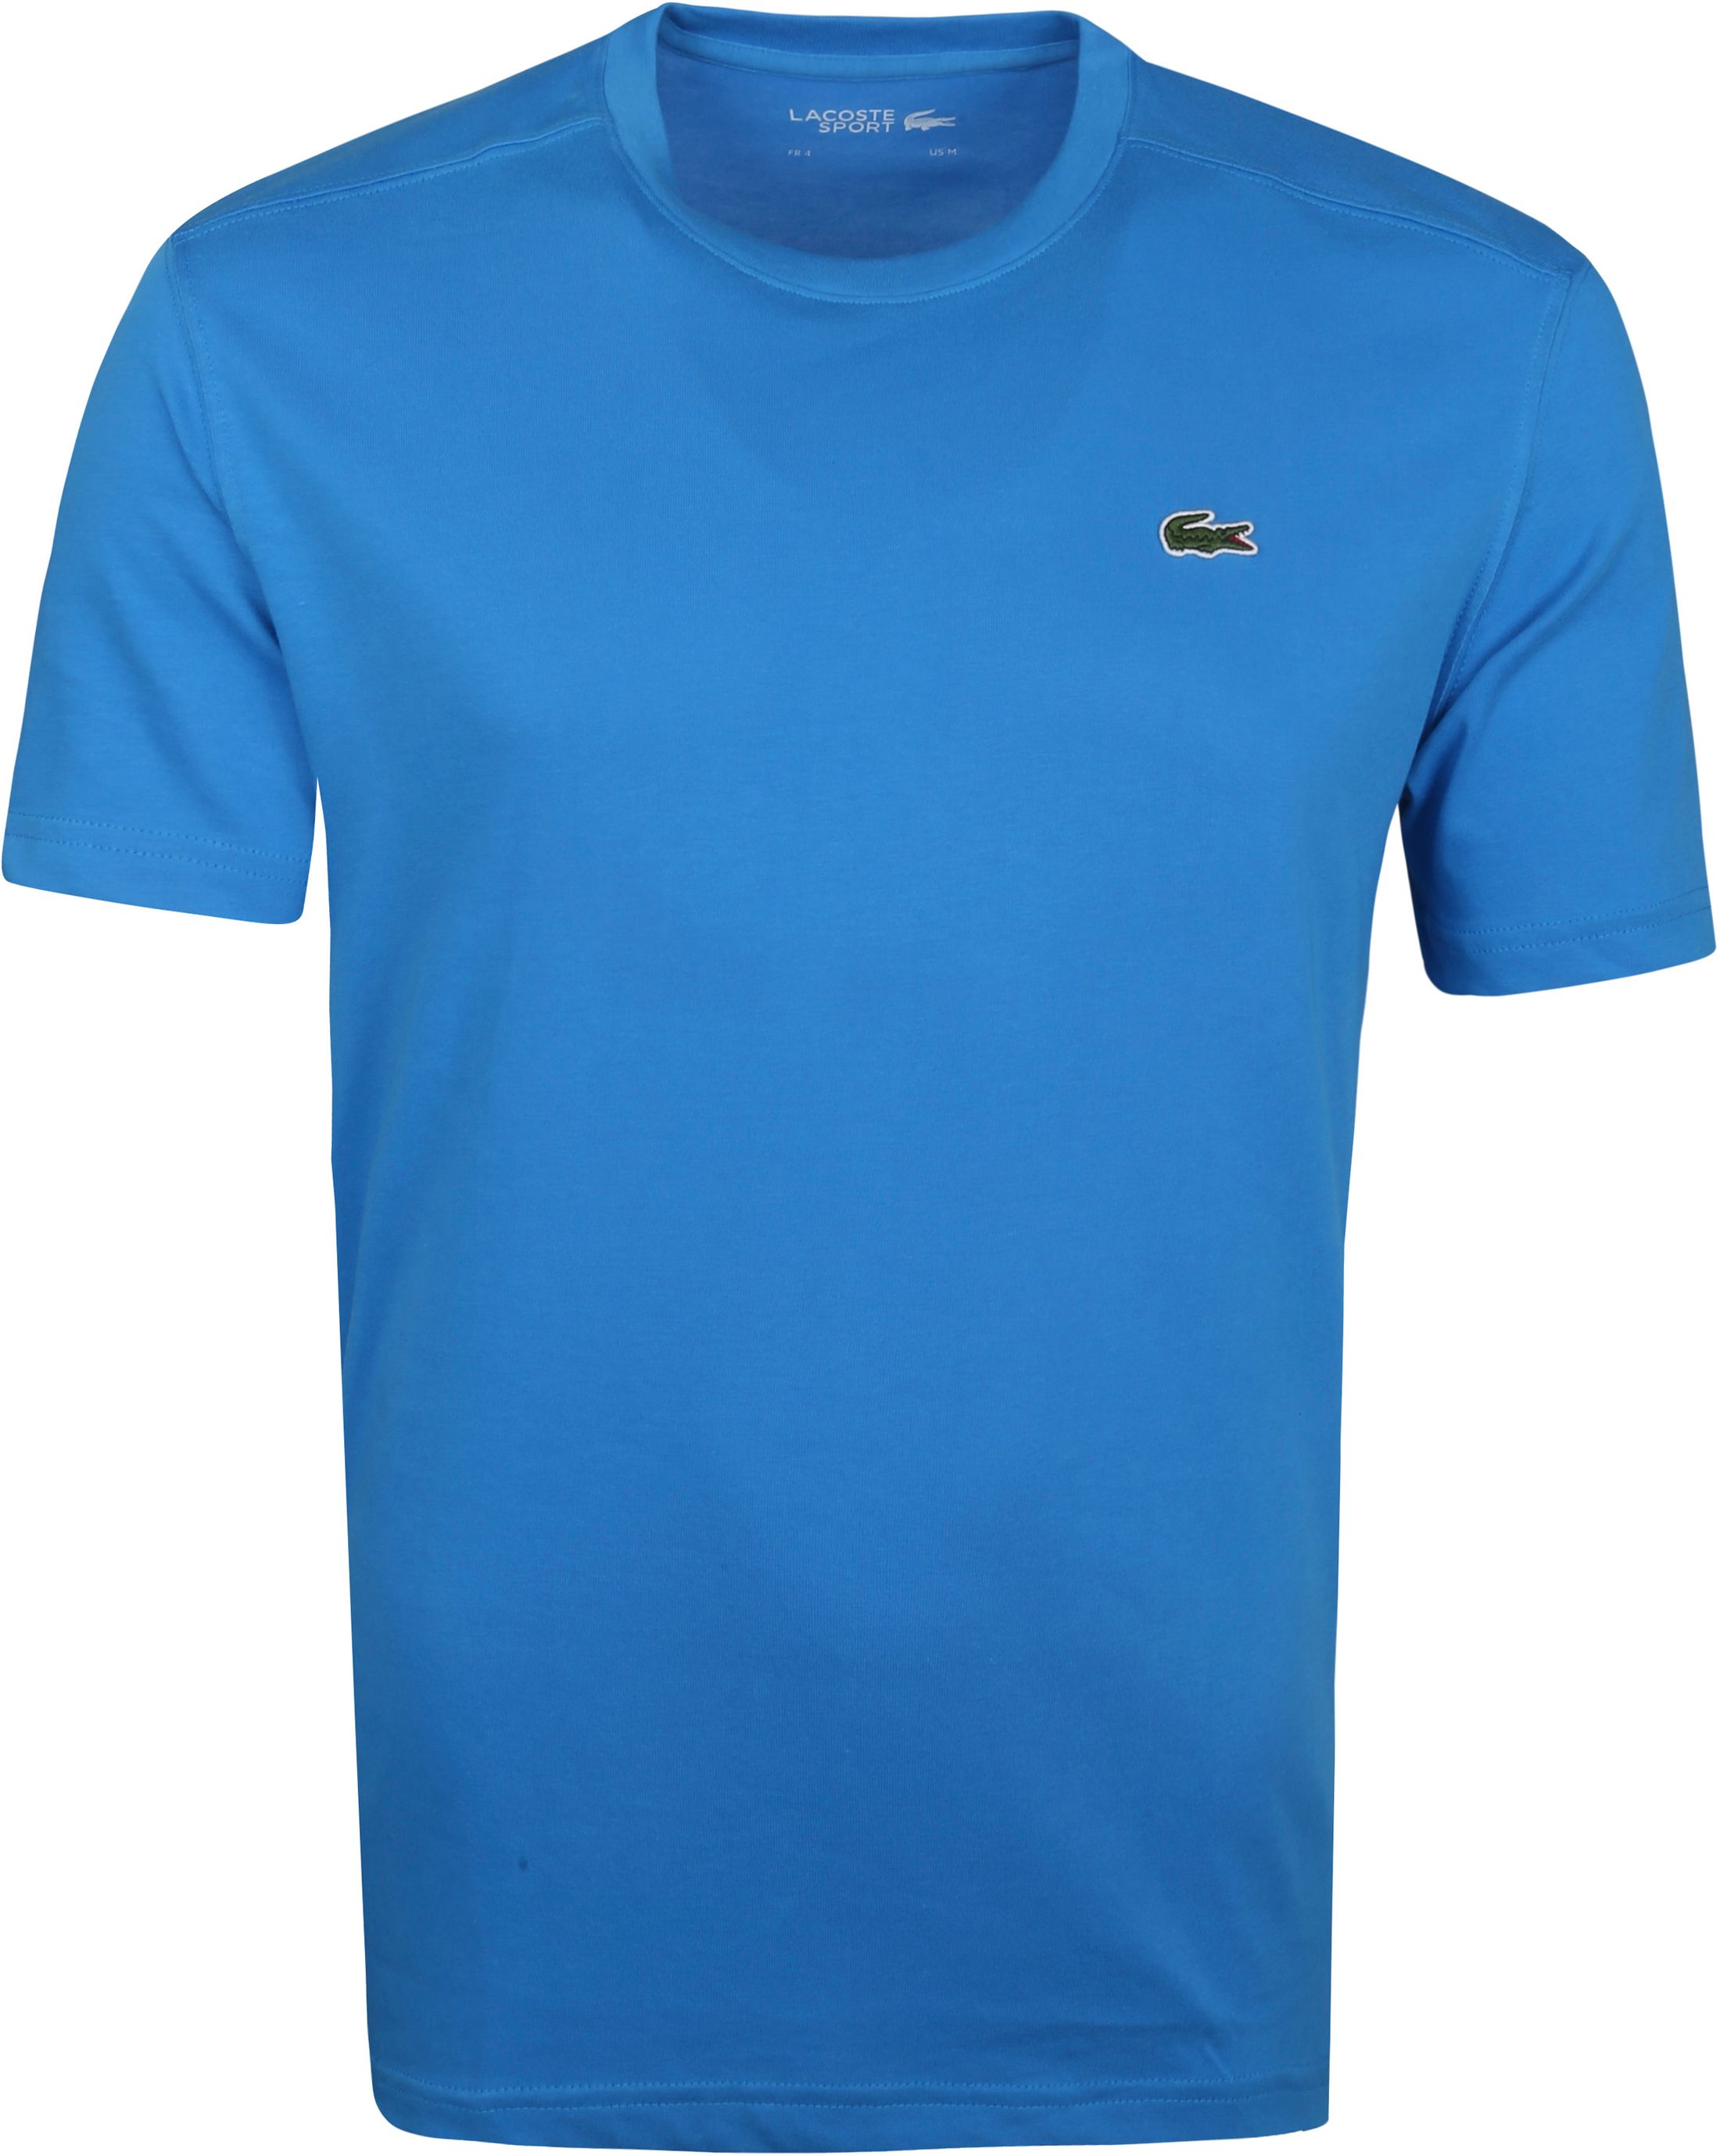 Lacoste T-Shirt Blue size L